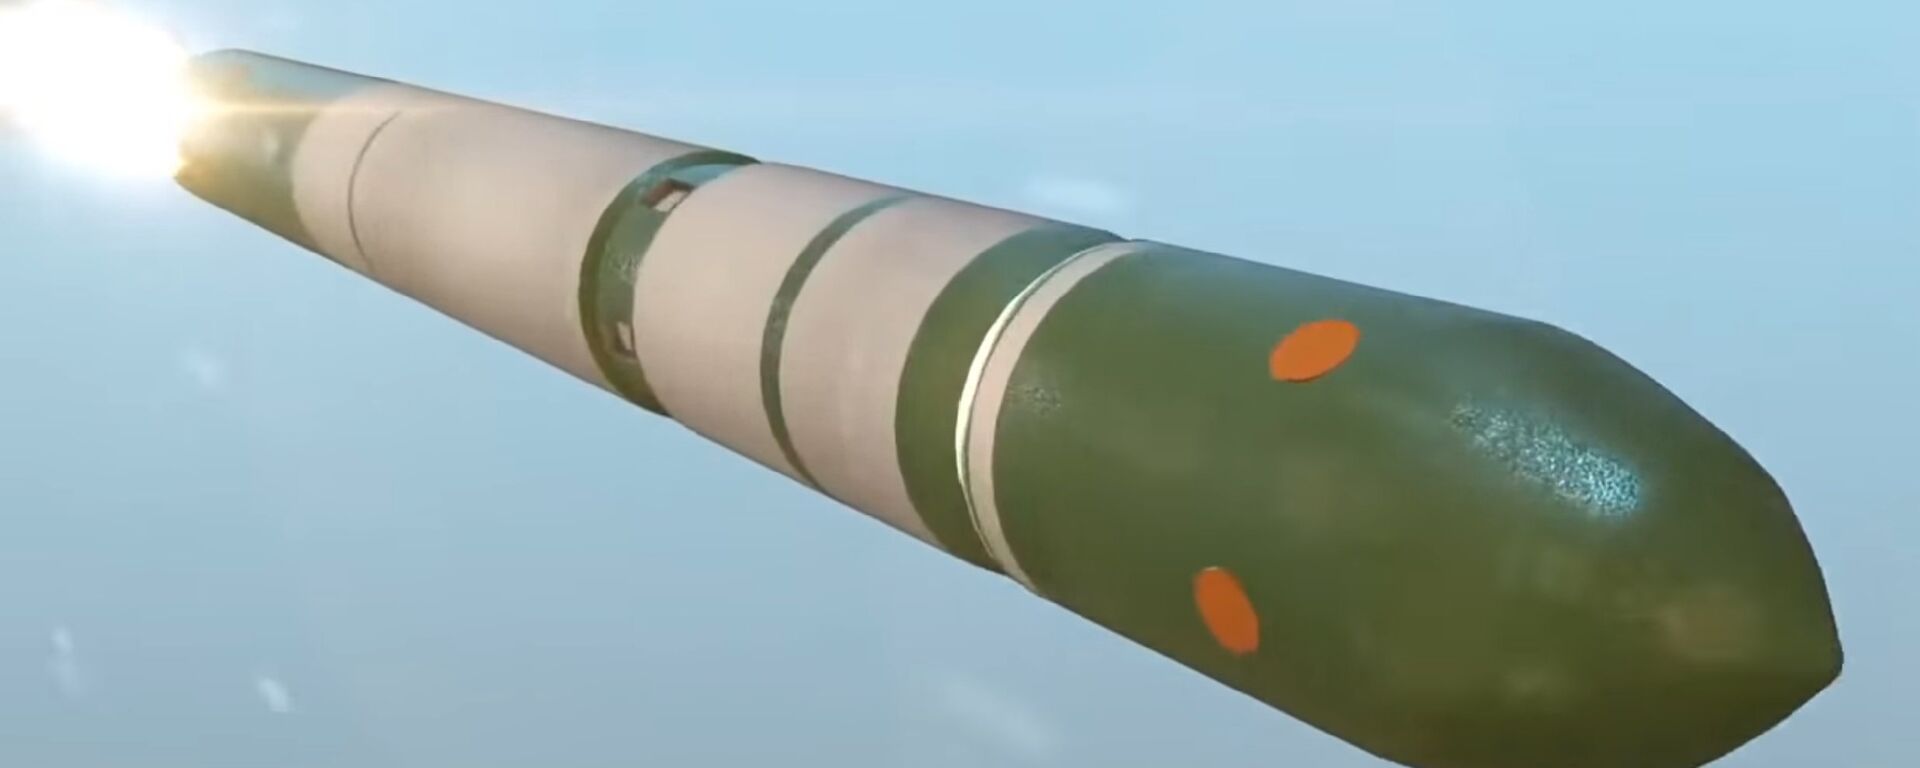 کارشناس نظامی: راکت «سرمات» را هیچ کدام سیستم مدافعه راکتی هدف قرار داده نمی تواند - اسپوتنیک افغانستان  , 1920, 13.01.2019